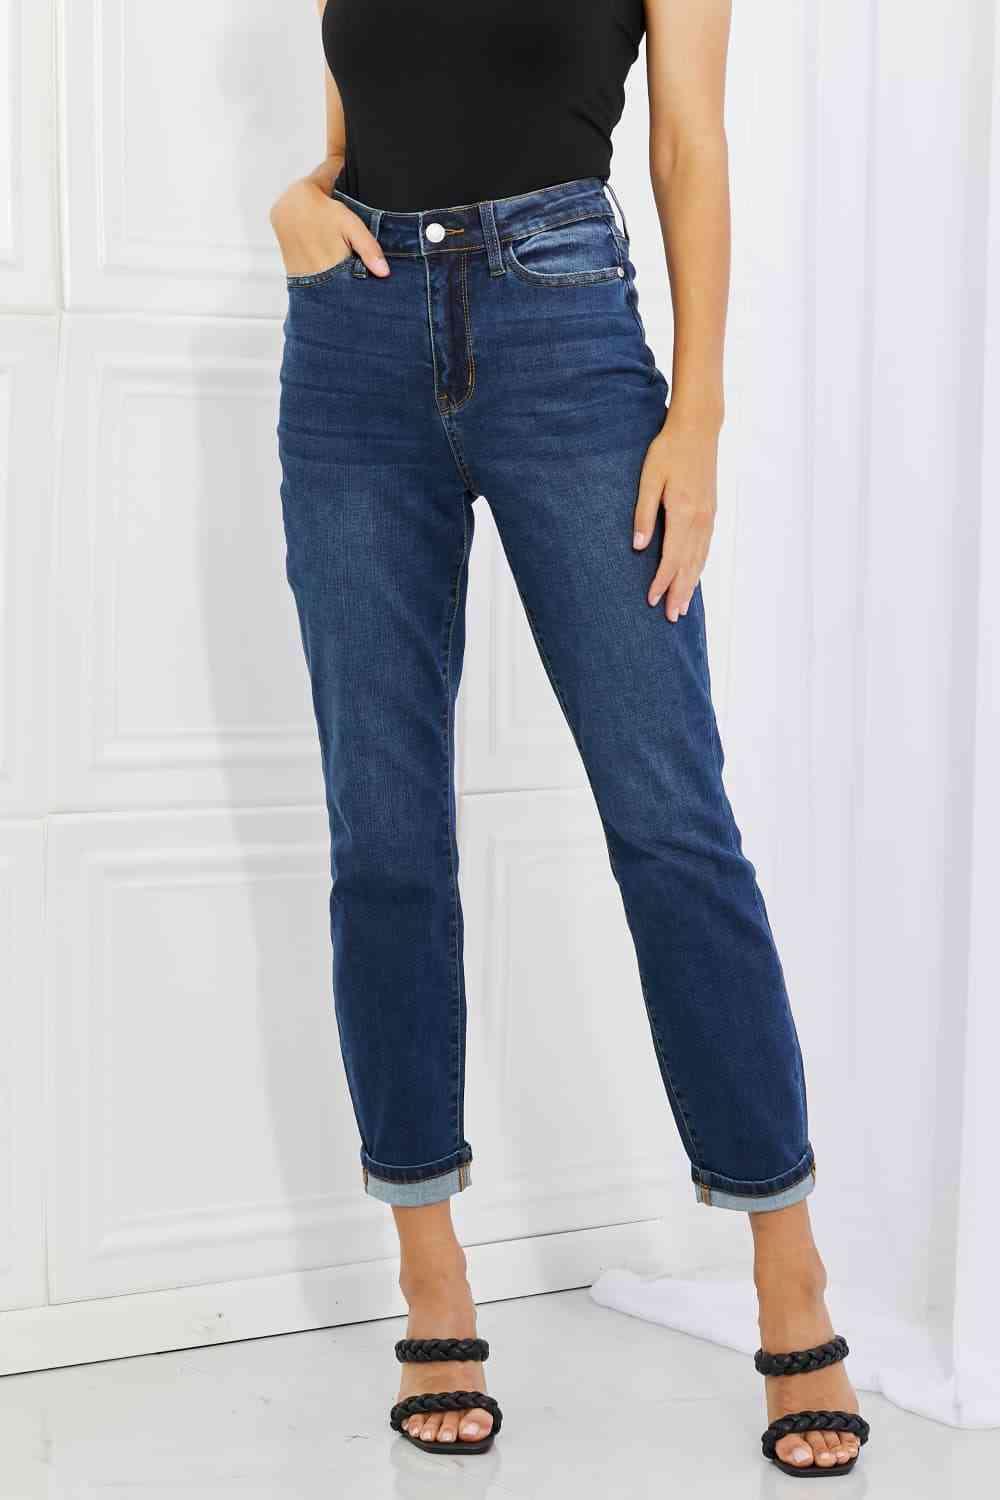 Judy Blue Crystal Full Size High Waisted Cuffed Boyfriend Jeans - Lab Fashion, Home & Health